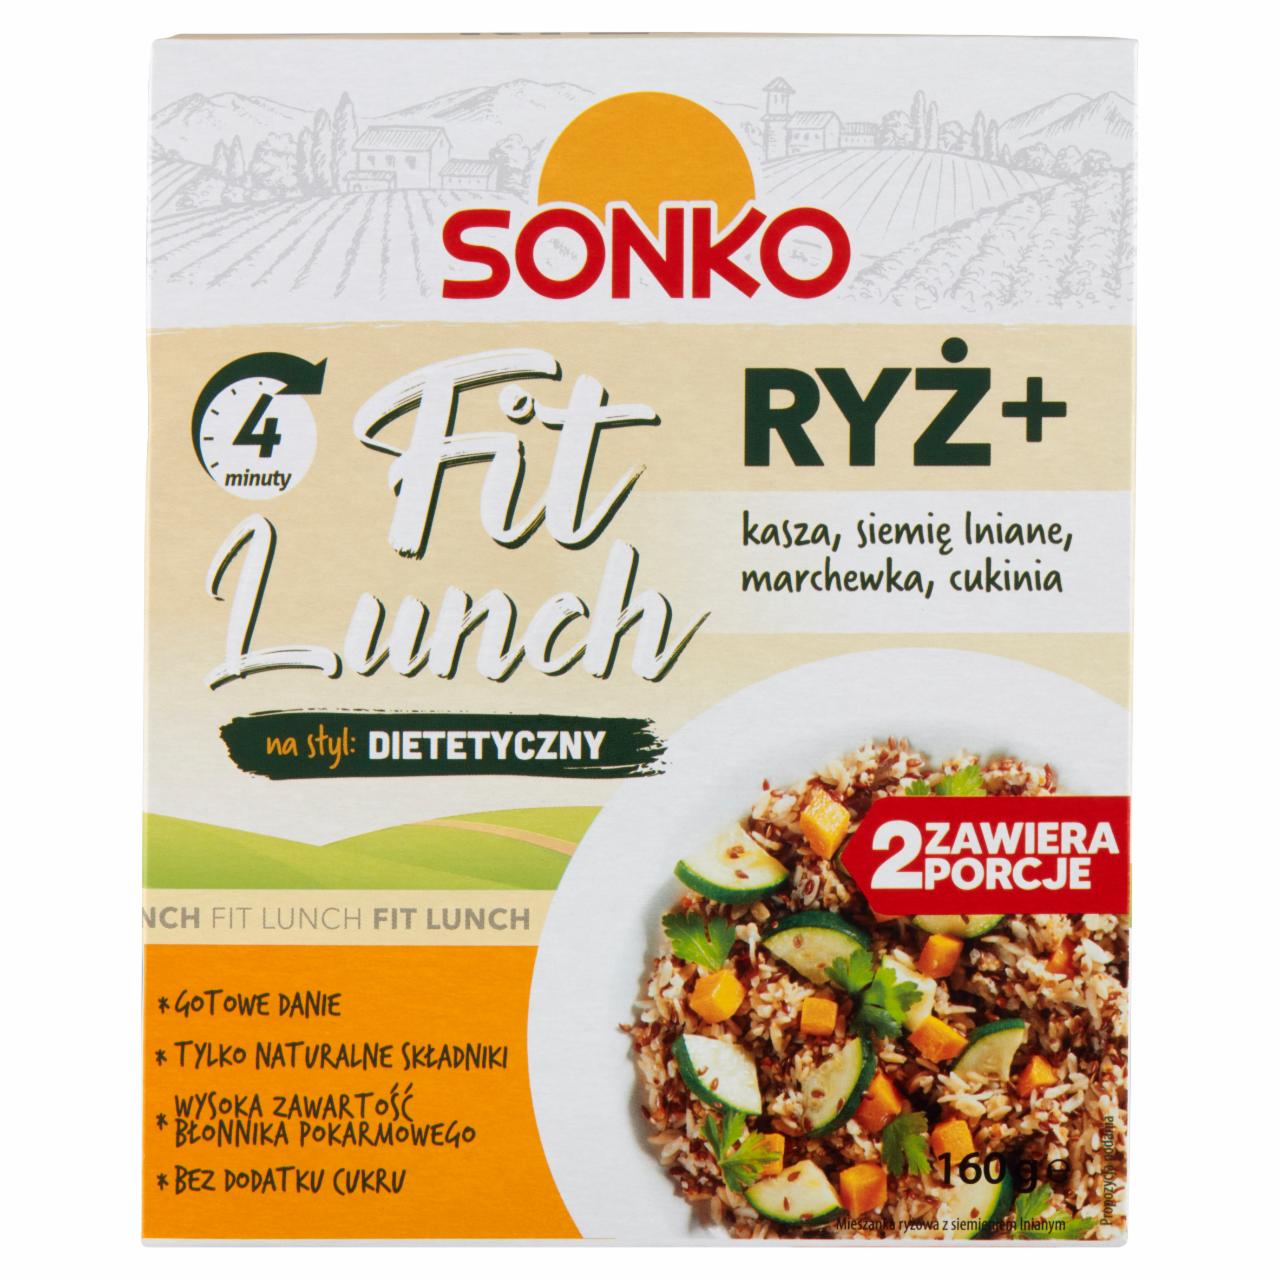 Zdjęcia - Sonko Fit Lunch Ryż + kasza siemię lniane marchewka cukinia 160 g